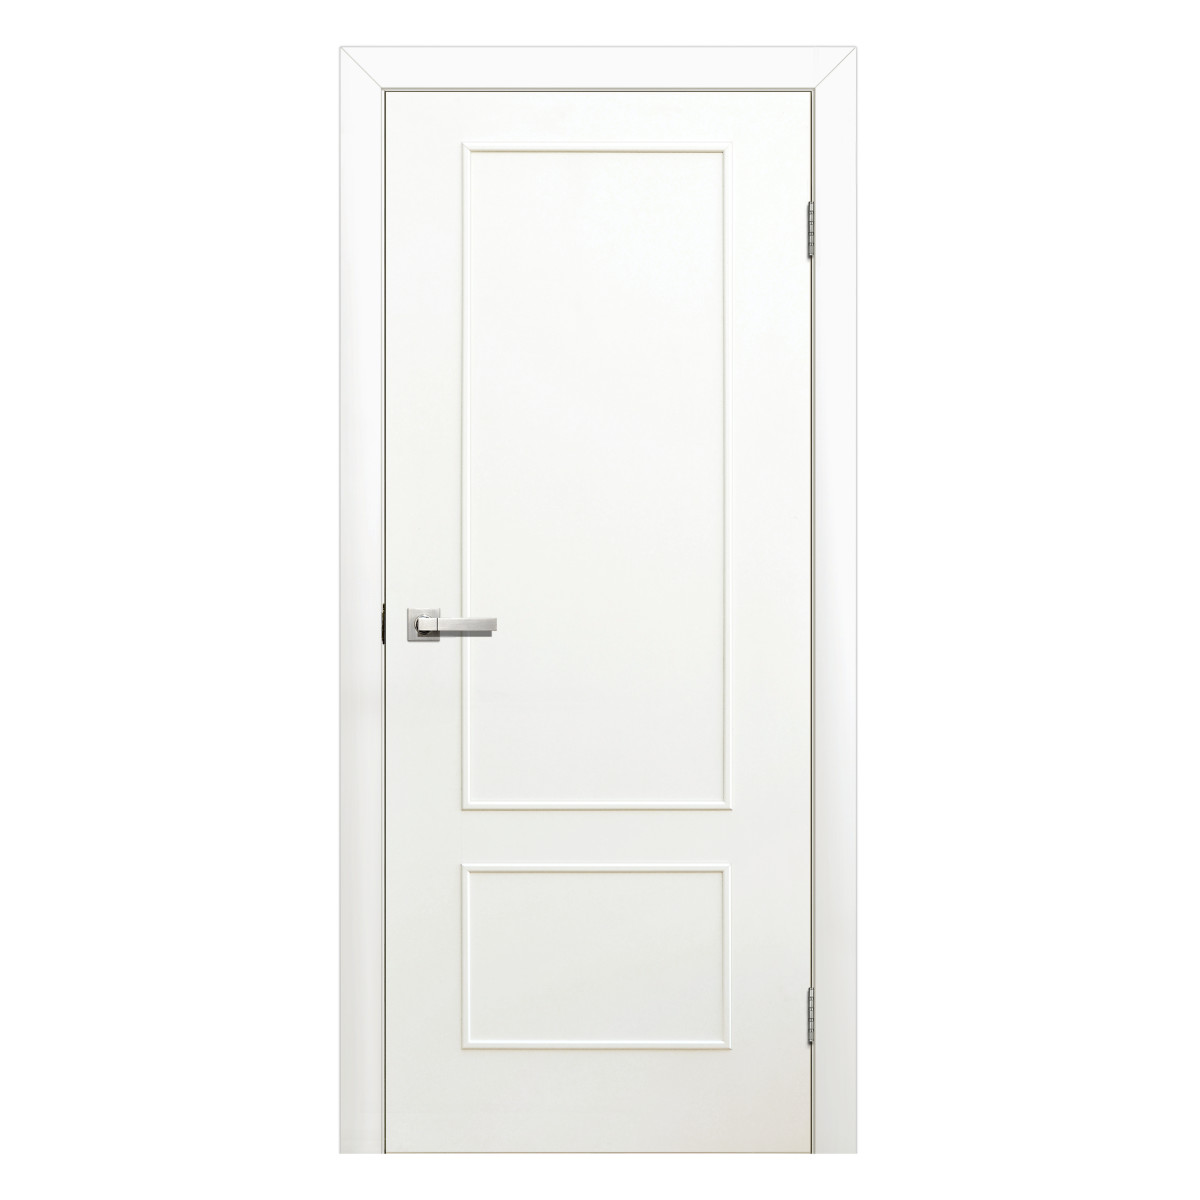 Дверь межкомнатная глухая ламинированная Классика 90x200 см цвет белый